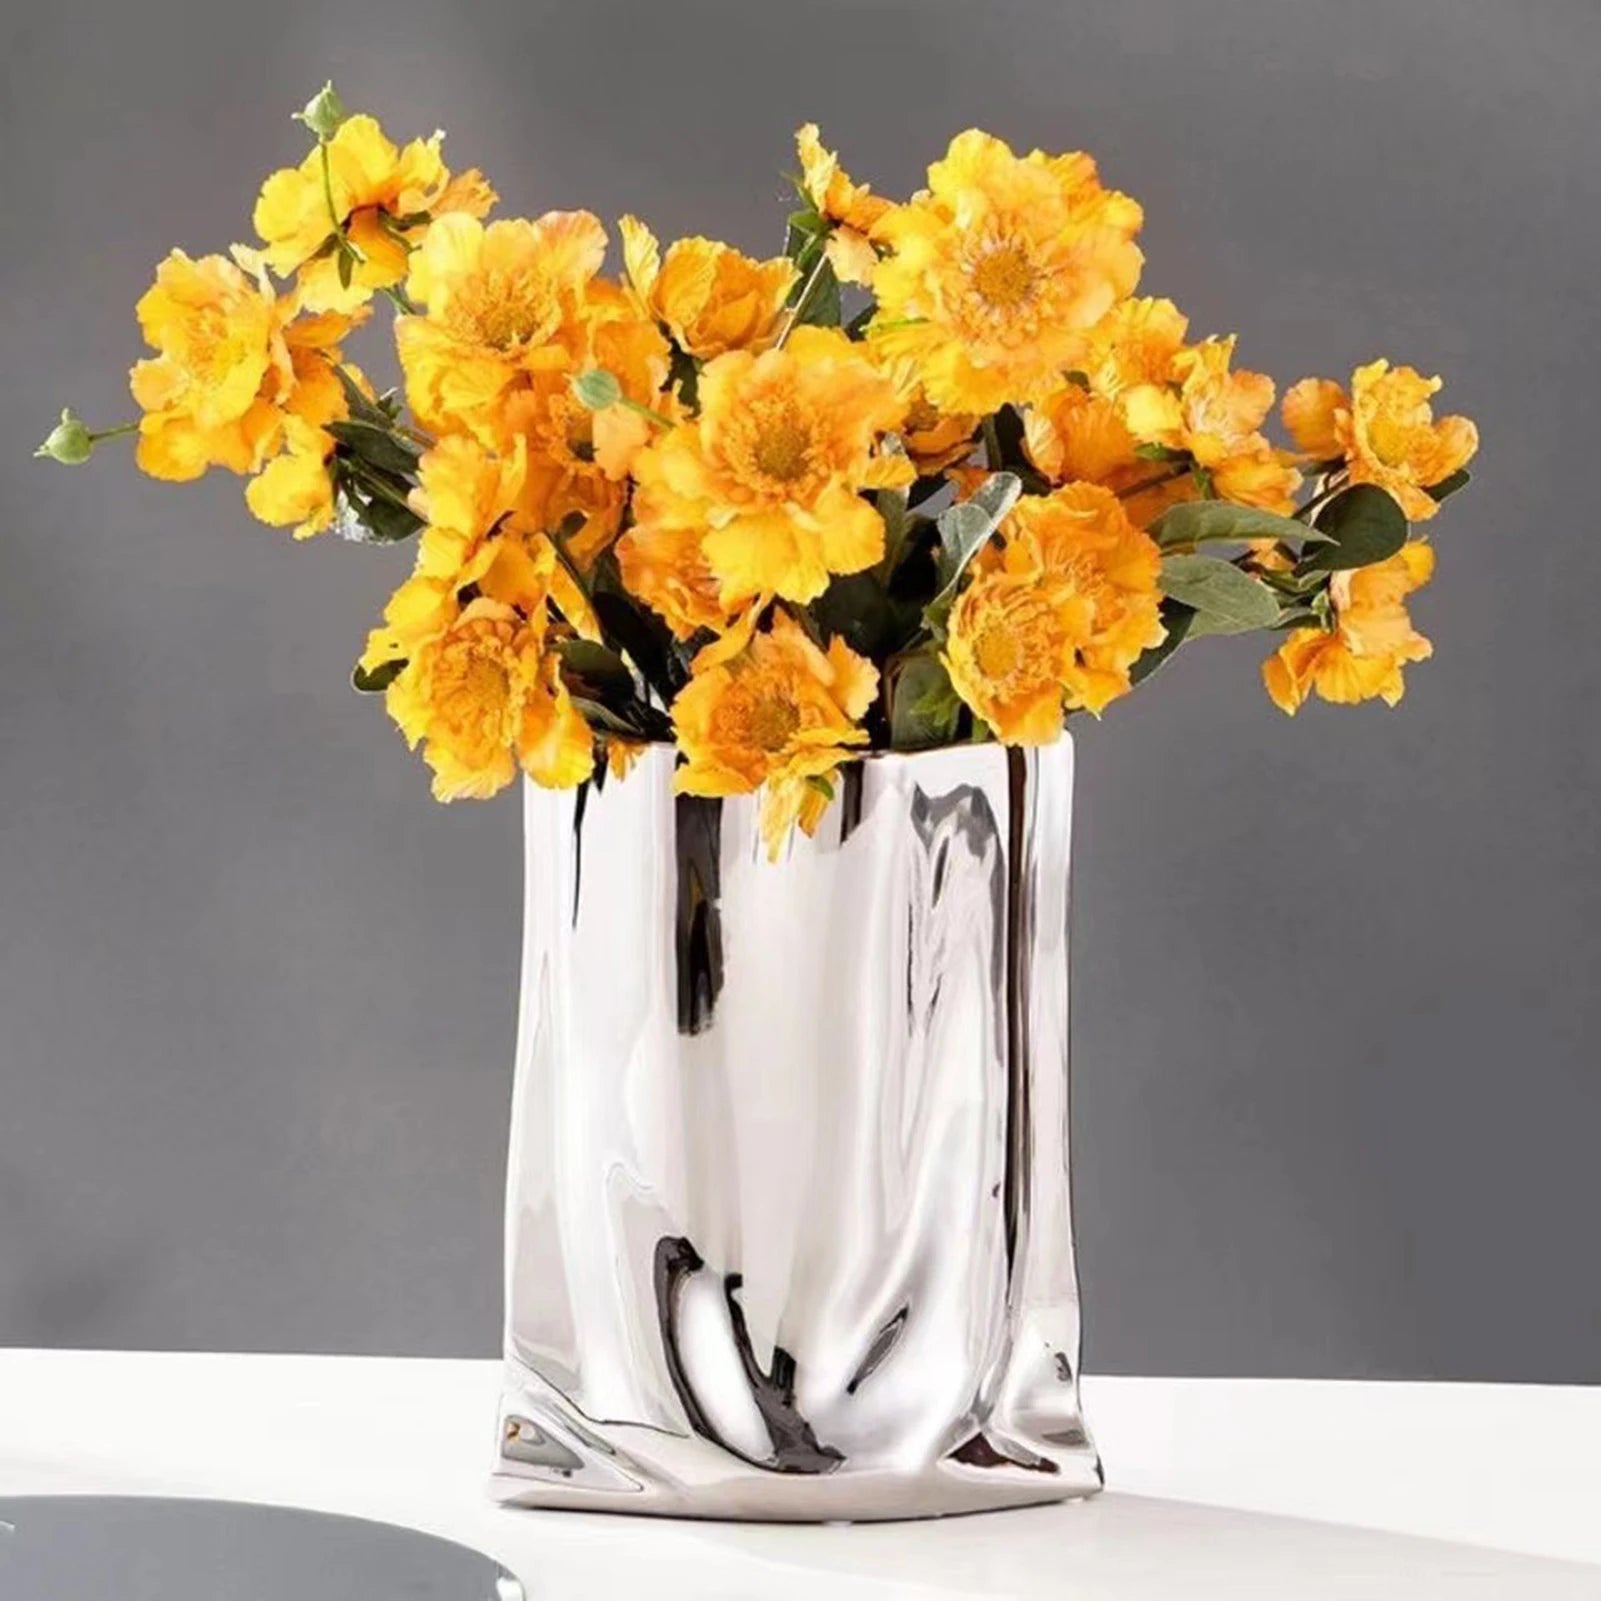 Seramik çiçek vazo büyük kapasite altın ve gümüş merkez parçası parti için ev yatak odası yemek masası dekor